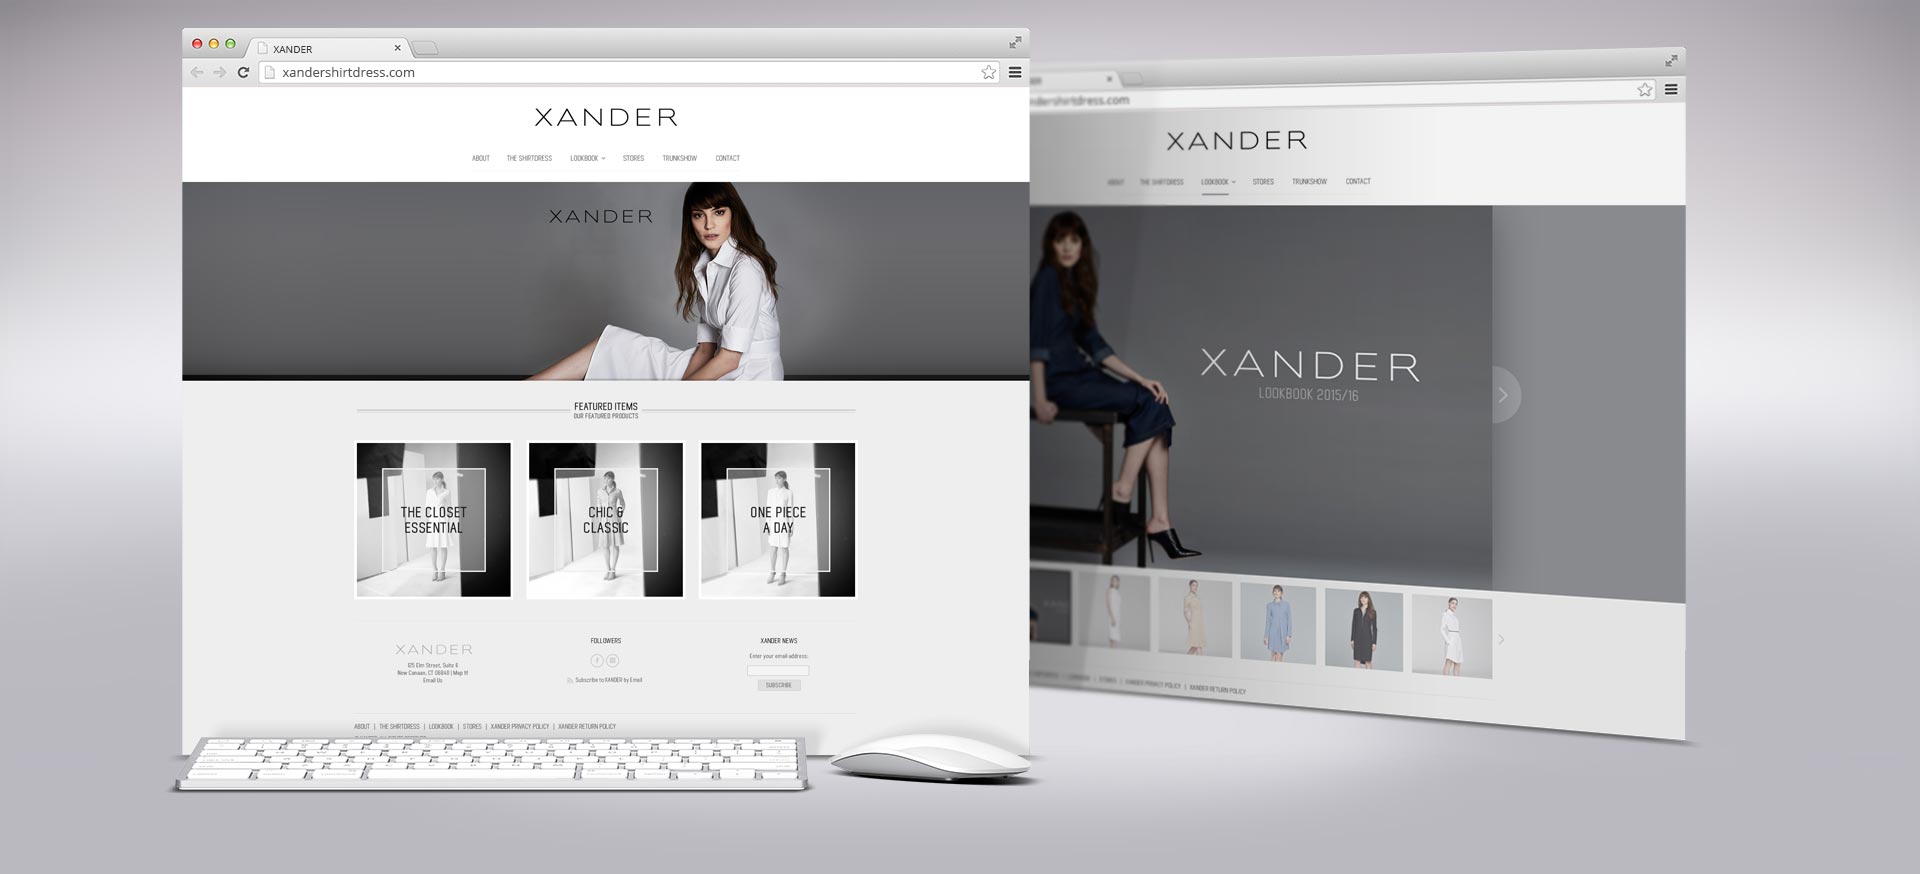 Xander website design